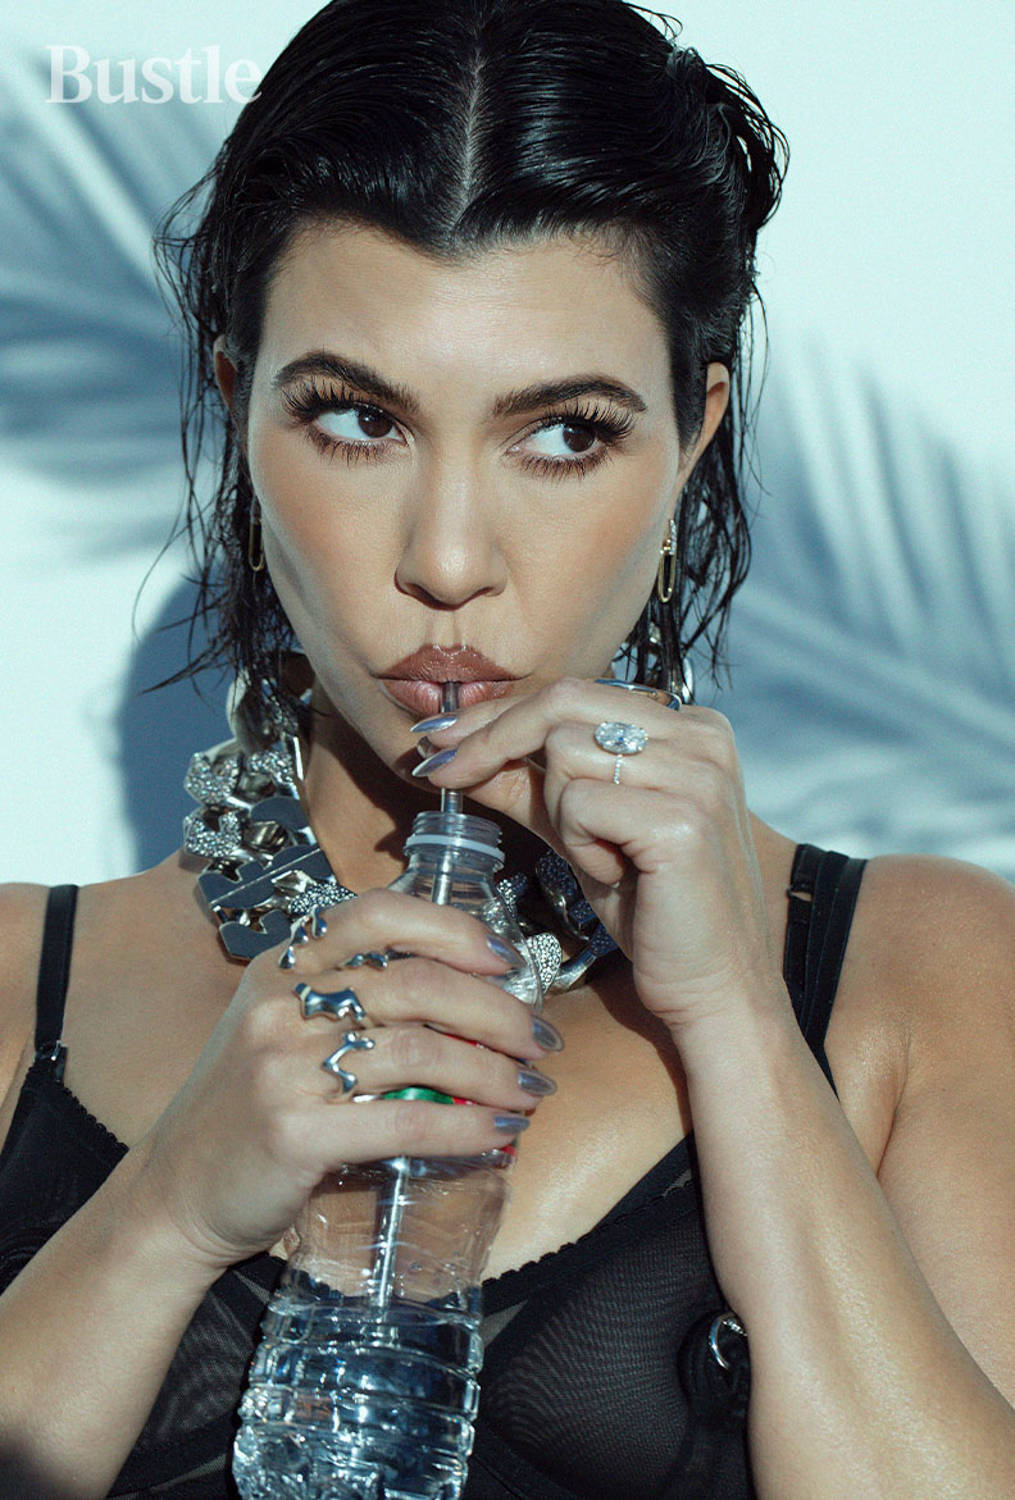 Elegant Kourtney Kardashian For Bustle Magazine